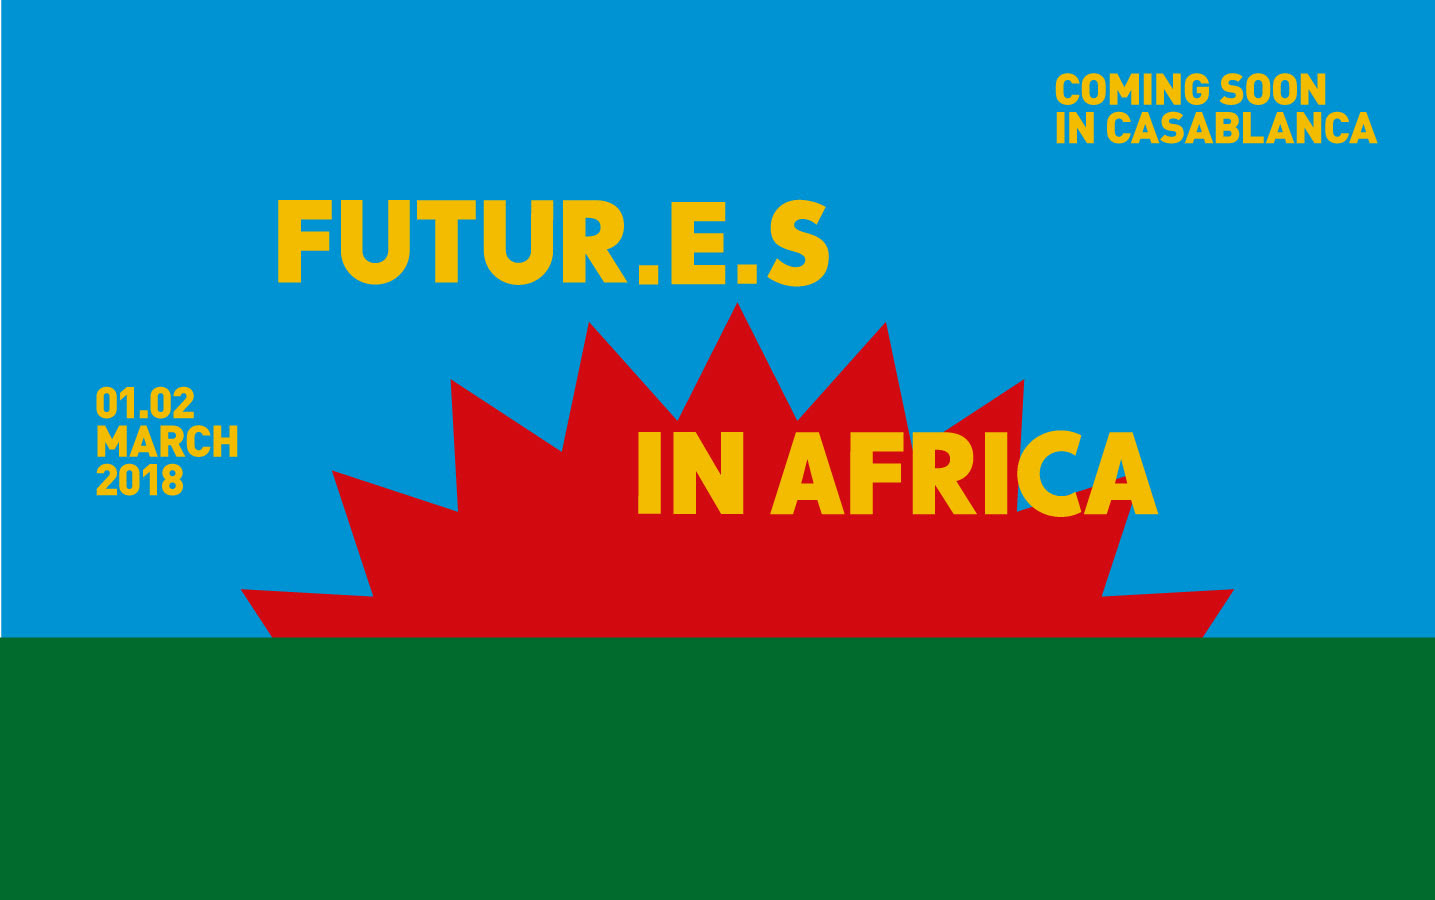 FUTUR.E.S IN AFRICA